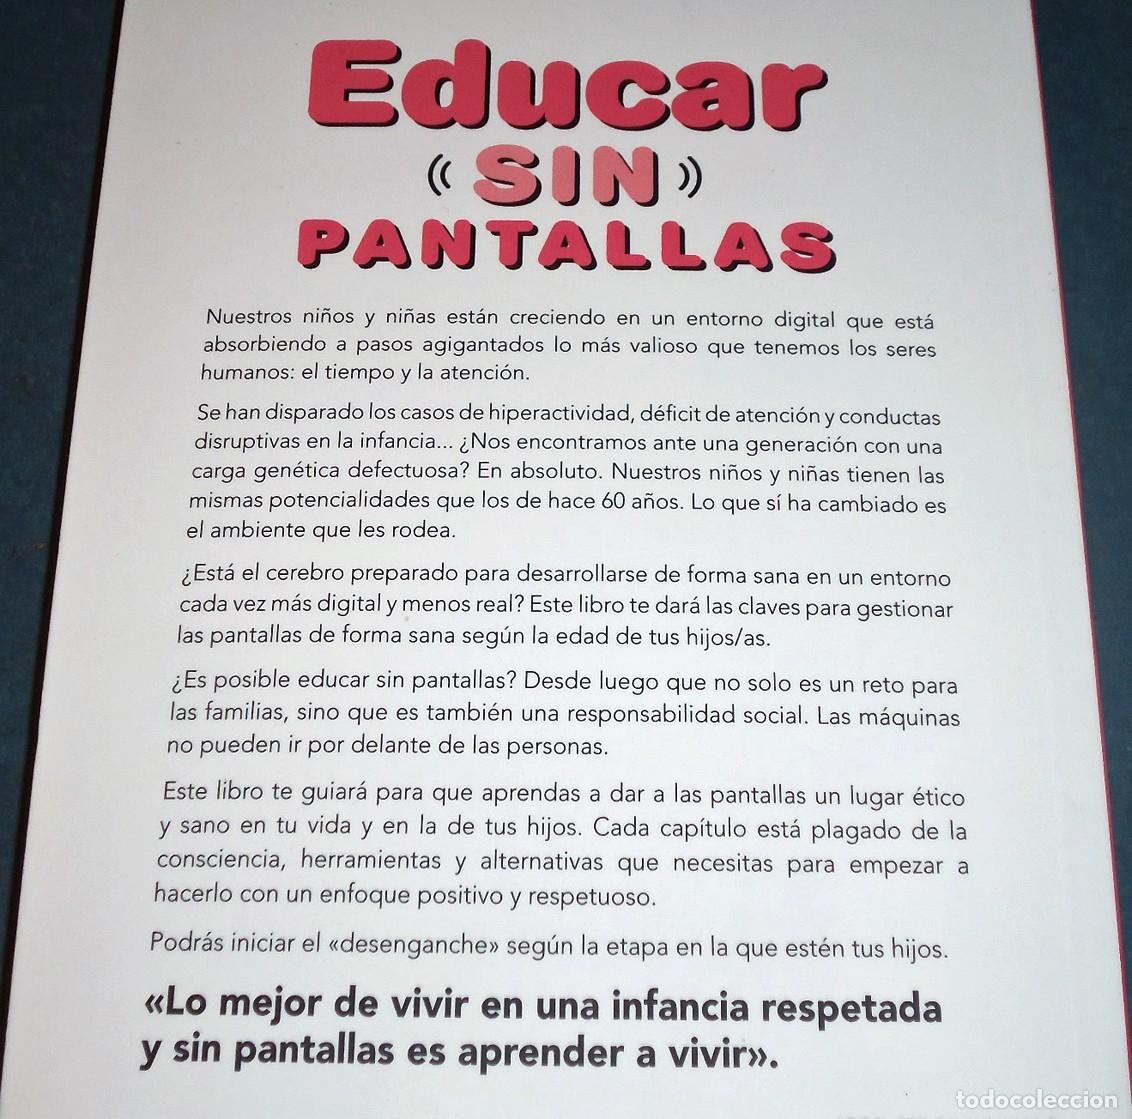 libro ”educar sin pantallas”, de marta prada - Buy Used books about  pedagogy on todocoleccion